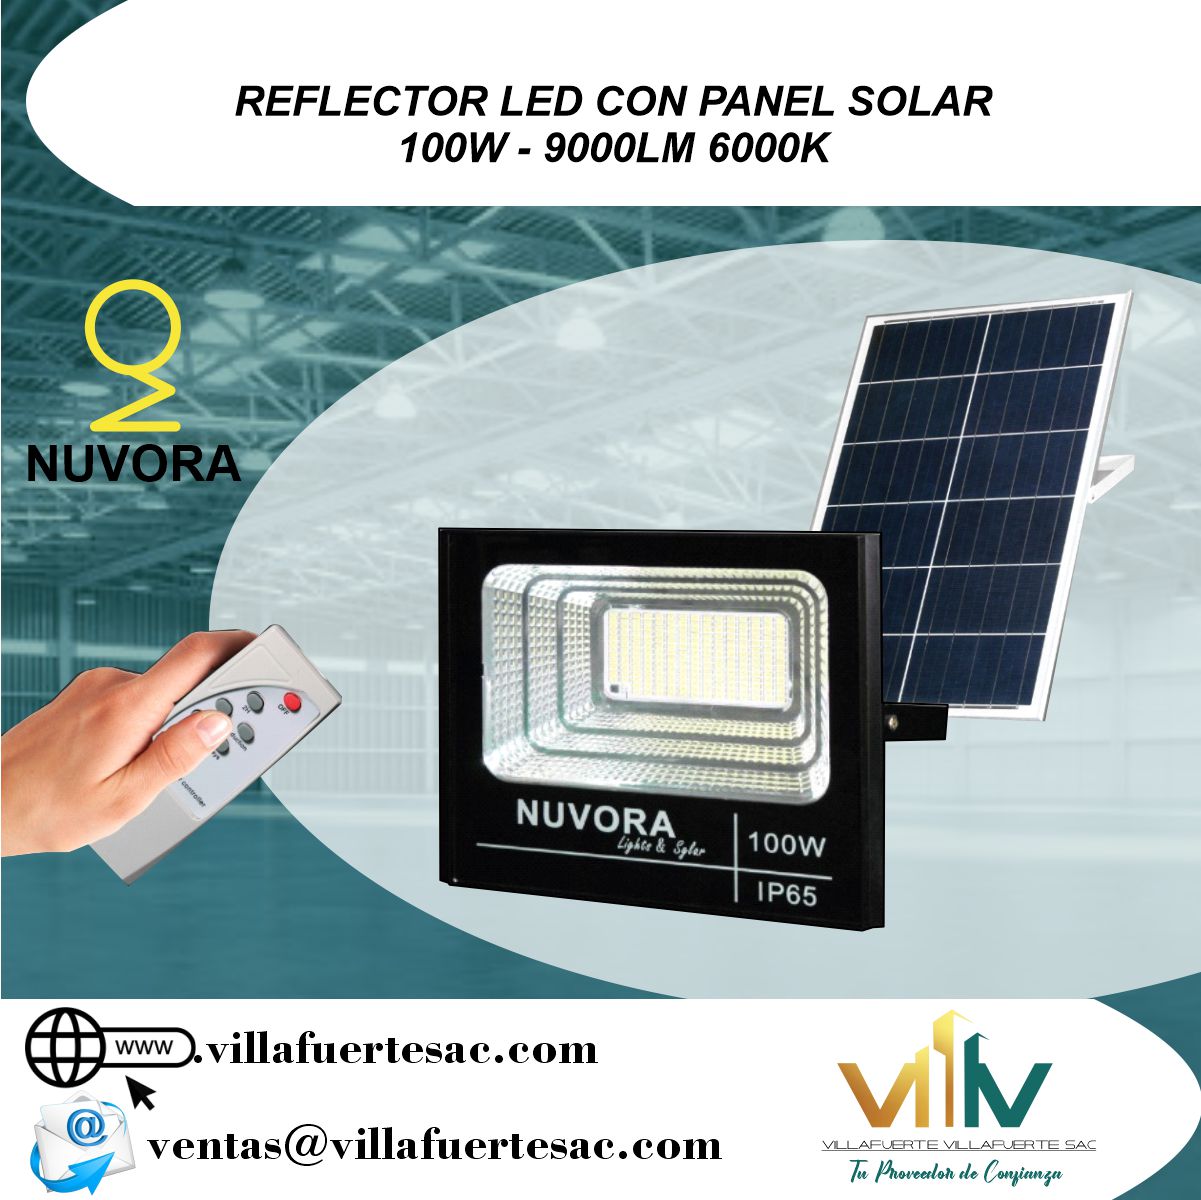 REFLECTOR LED CON PANEL SOLAR 100W - 9000LM 6000K - Villafuerte Villafuerte  S.A.C